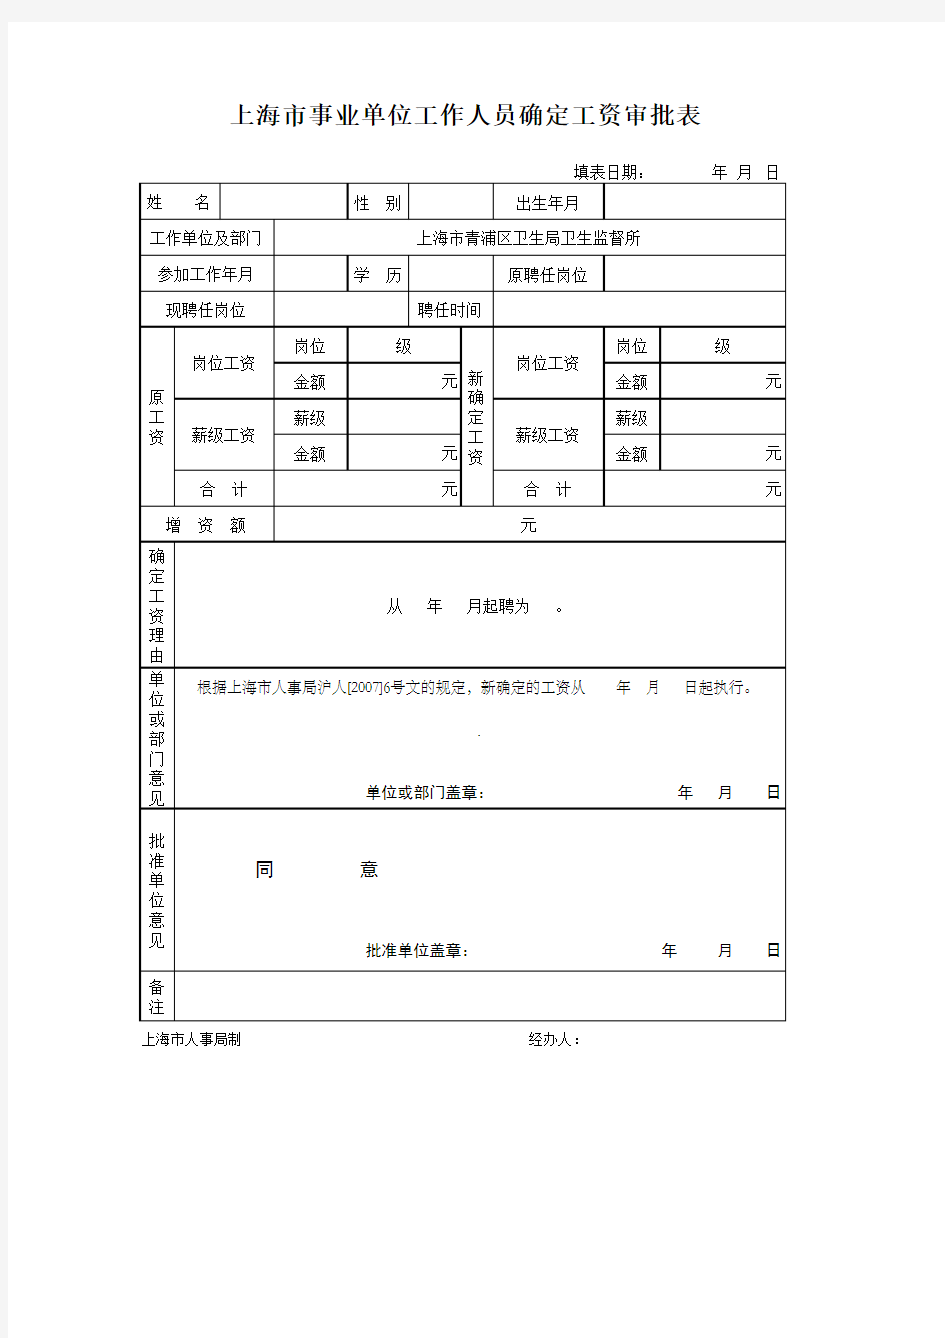 上海市机关事业单位工作人员   调整职务(岗位)津贴标准审批表,确定工资审批表